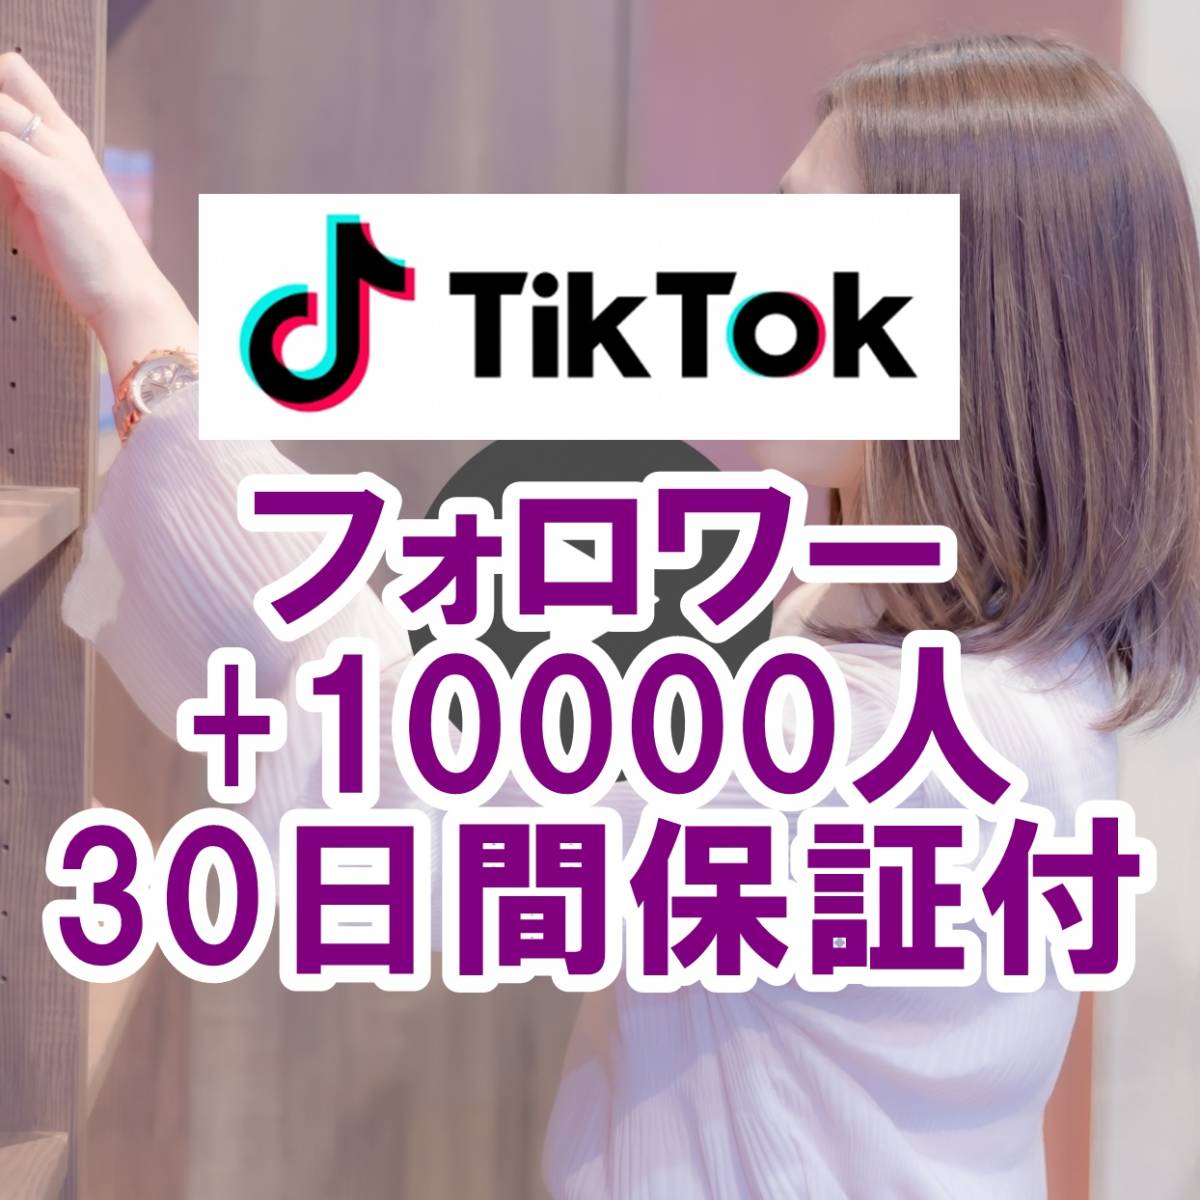 100%正規品 登録者数 フォロワー TikTok 【おまけ +10000人】 最高品質